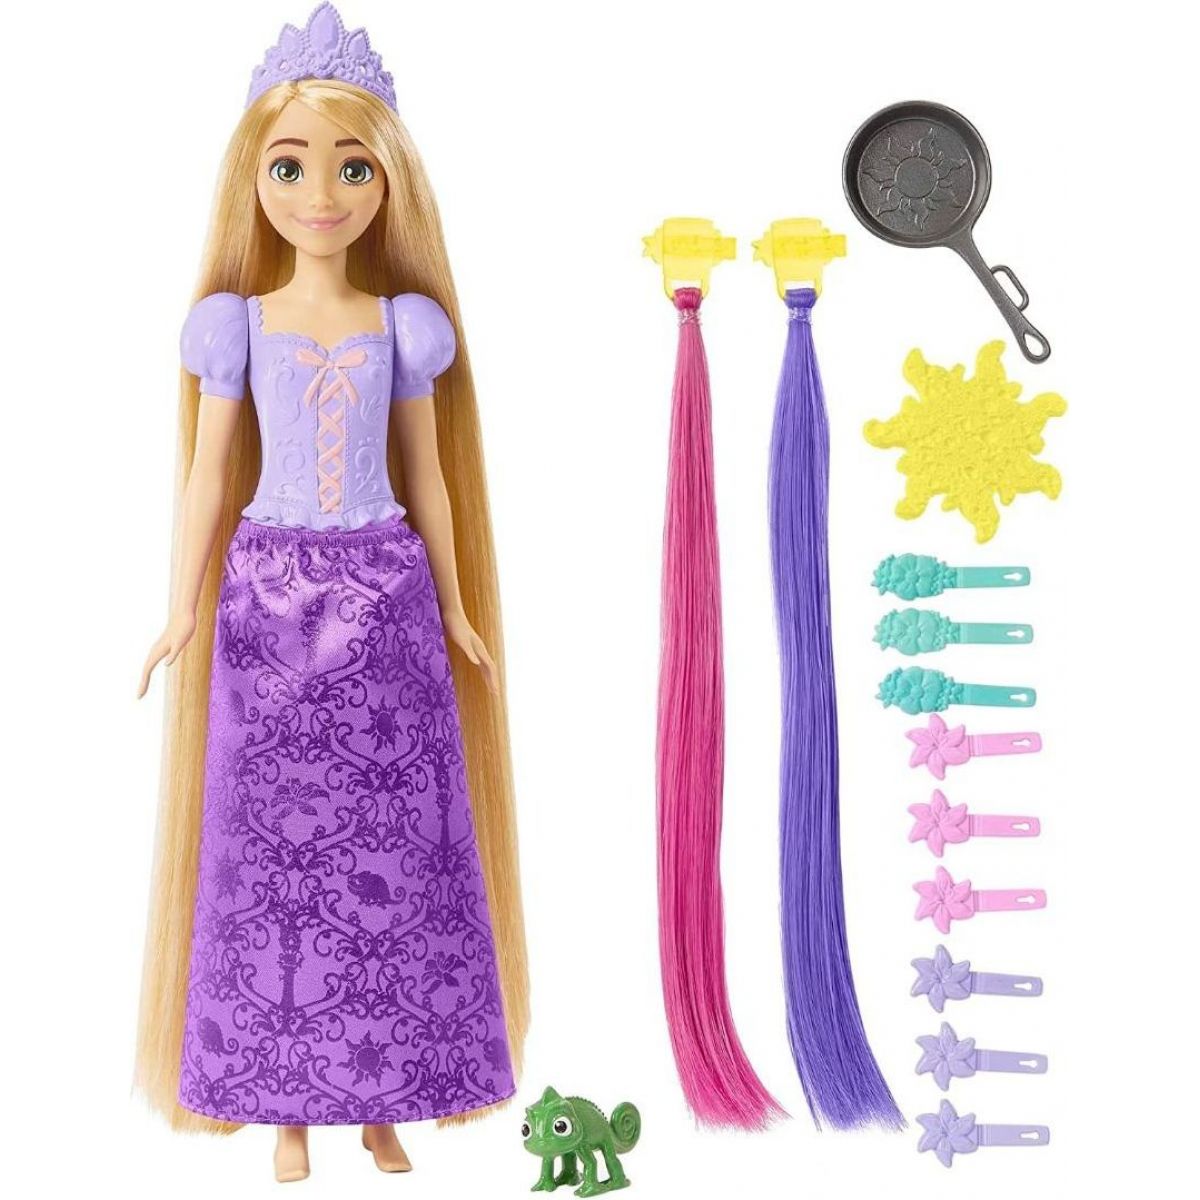 Mattel Disney Princess panenka Locika s Pohádkovými Vlasy HLW18